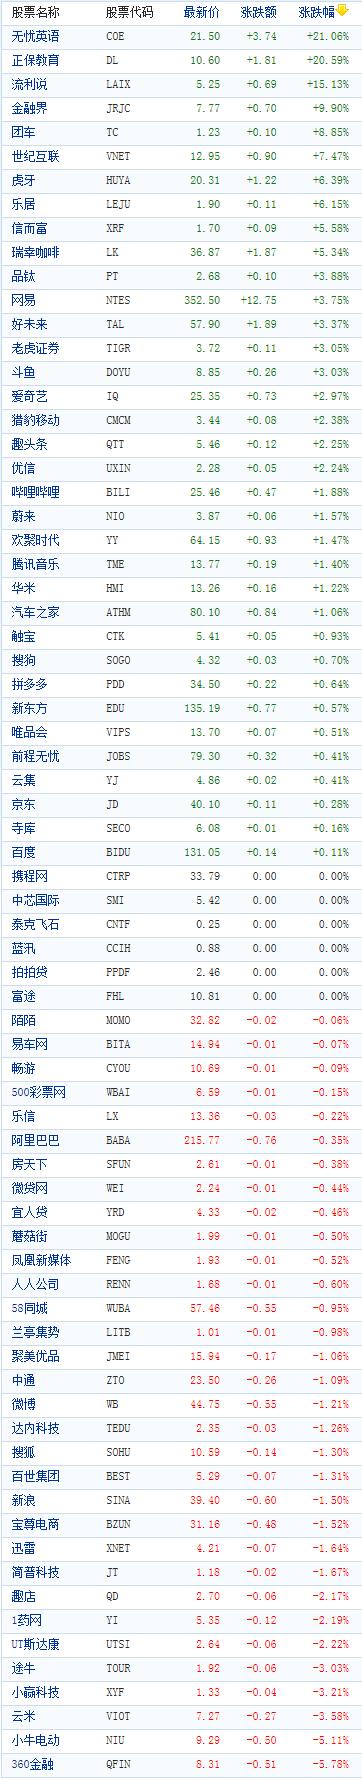 中国概念股周一收盘涨跌互现 无忧英语涨逾21%